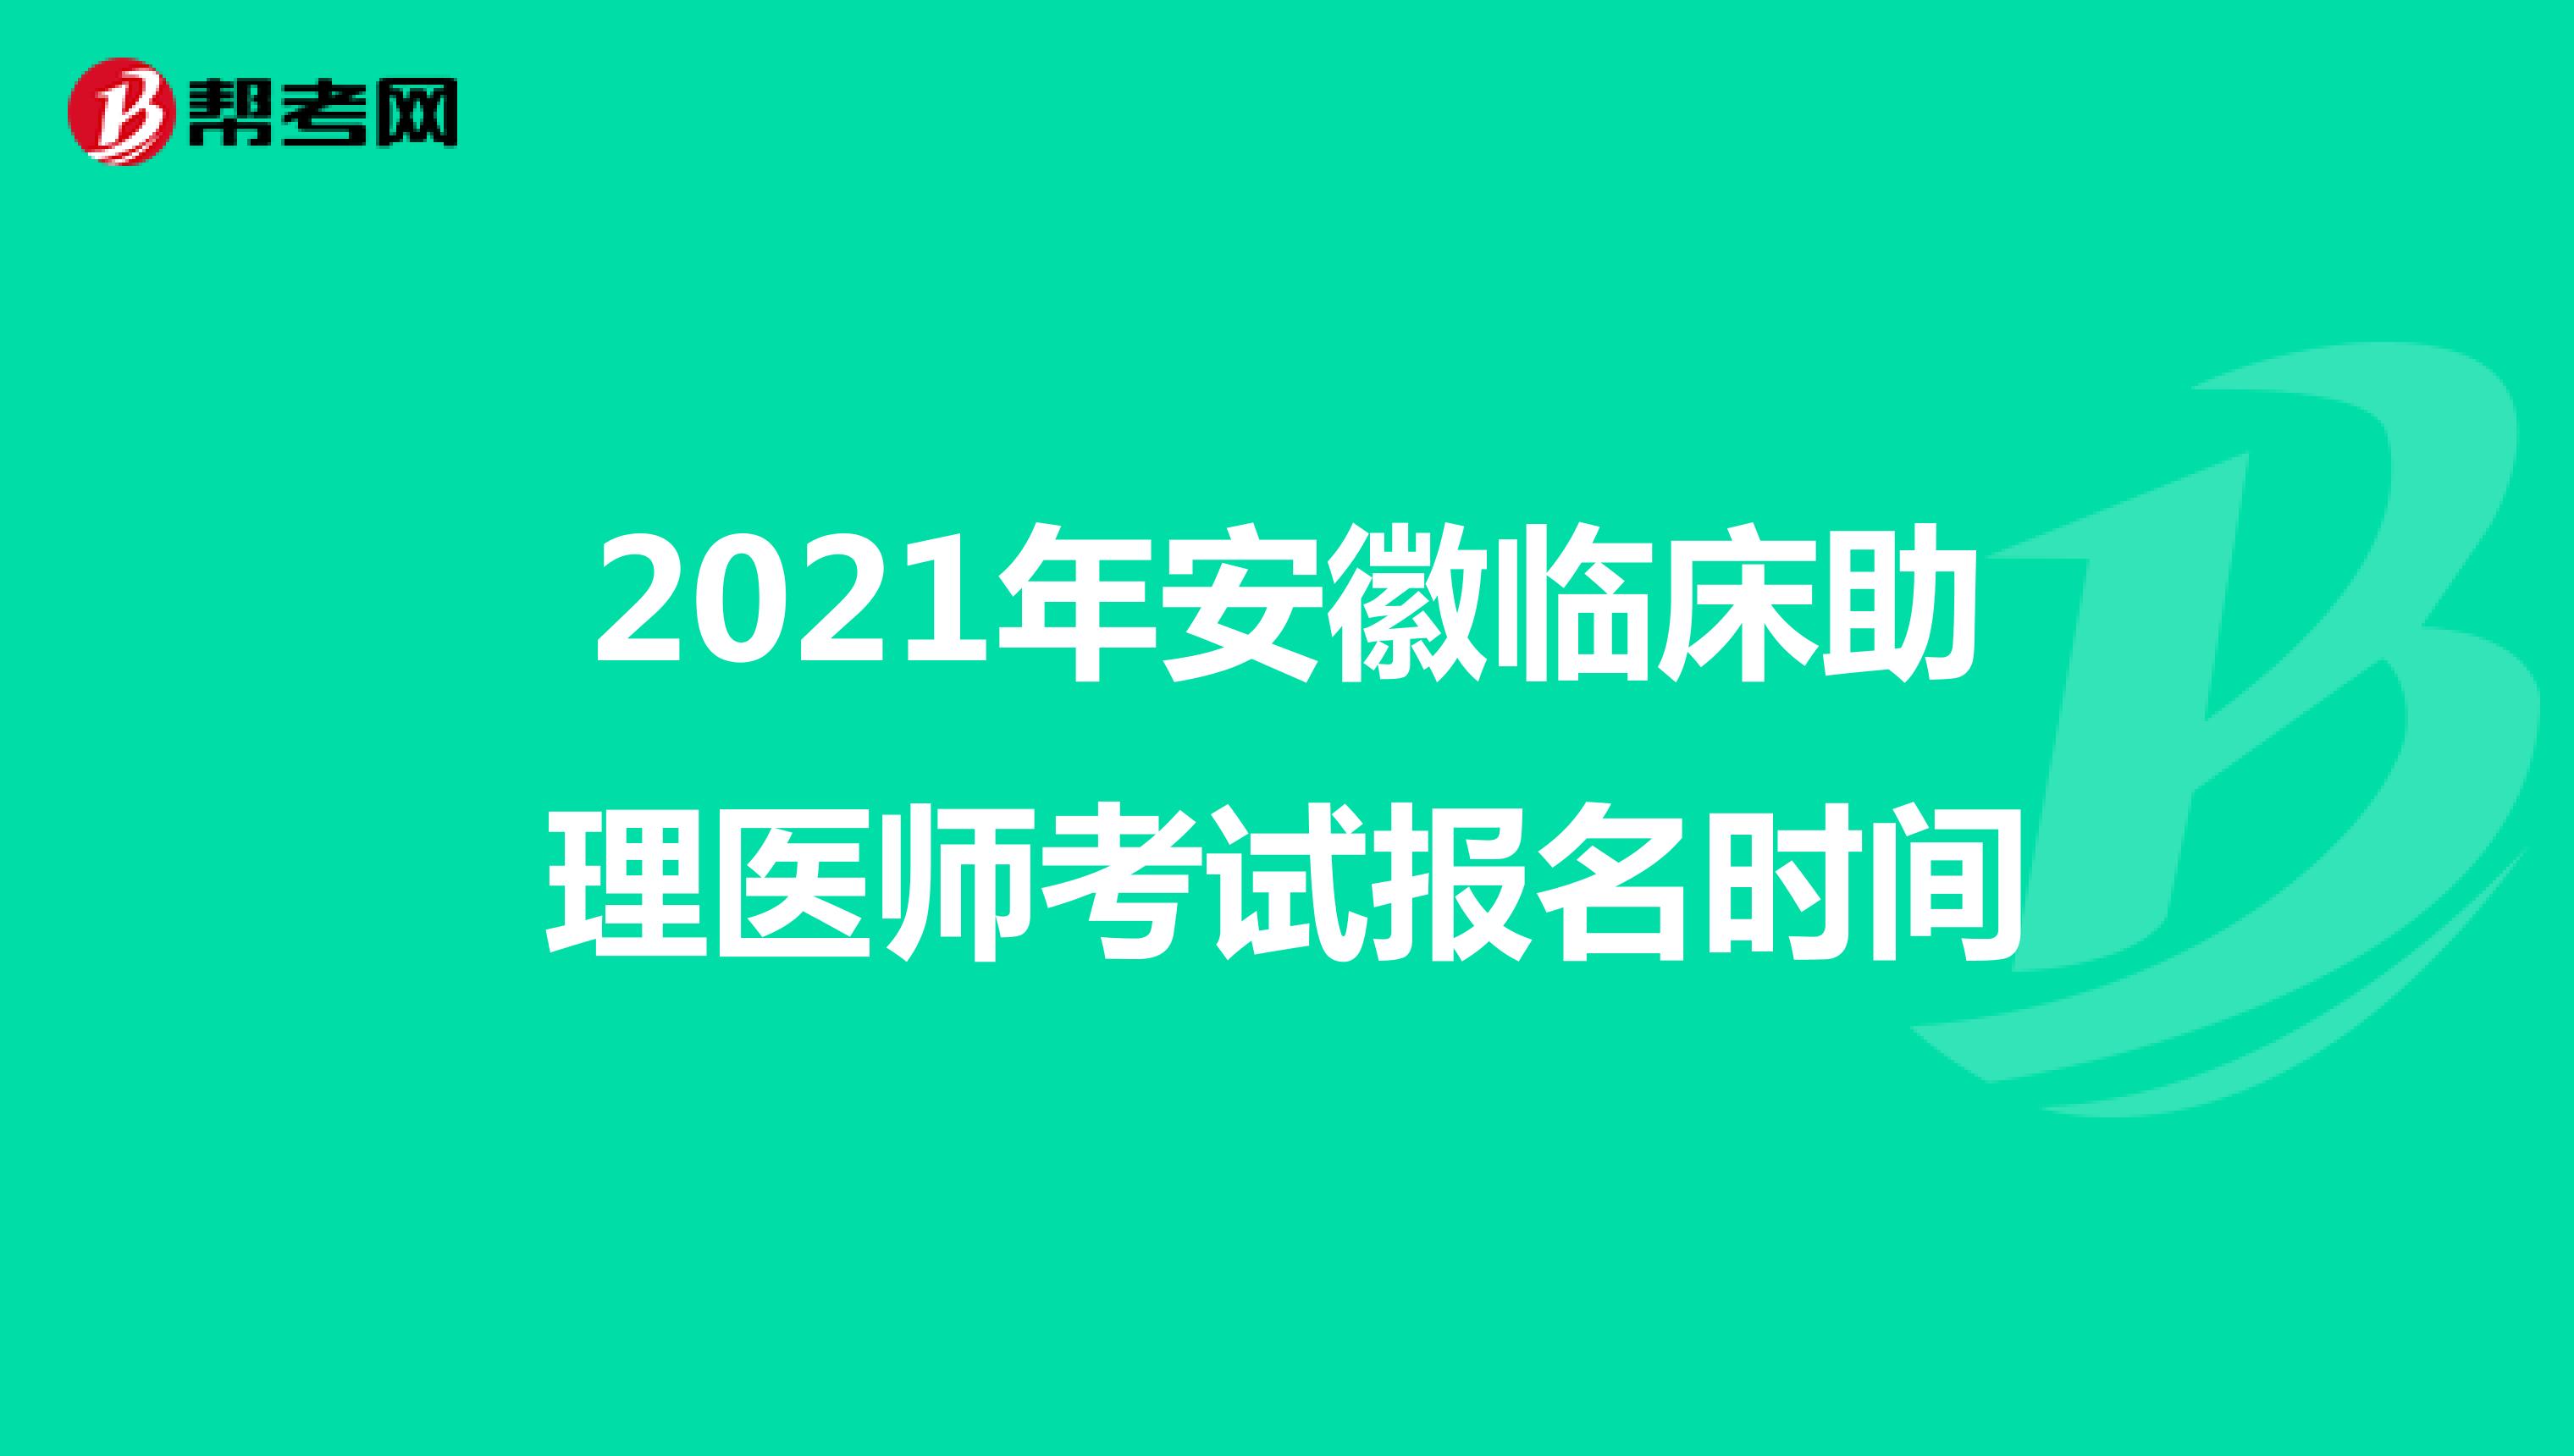 2021年安徽临床助理医师考试报名时间